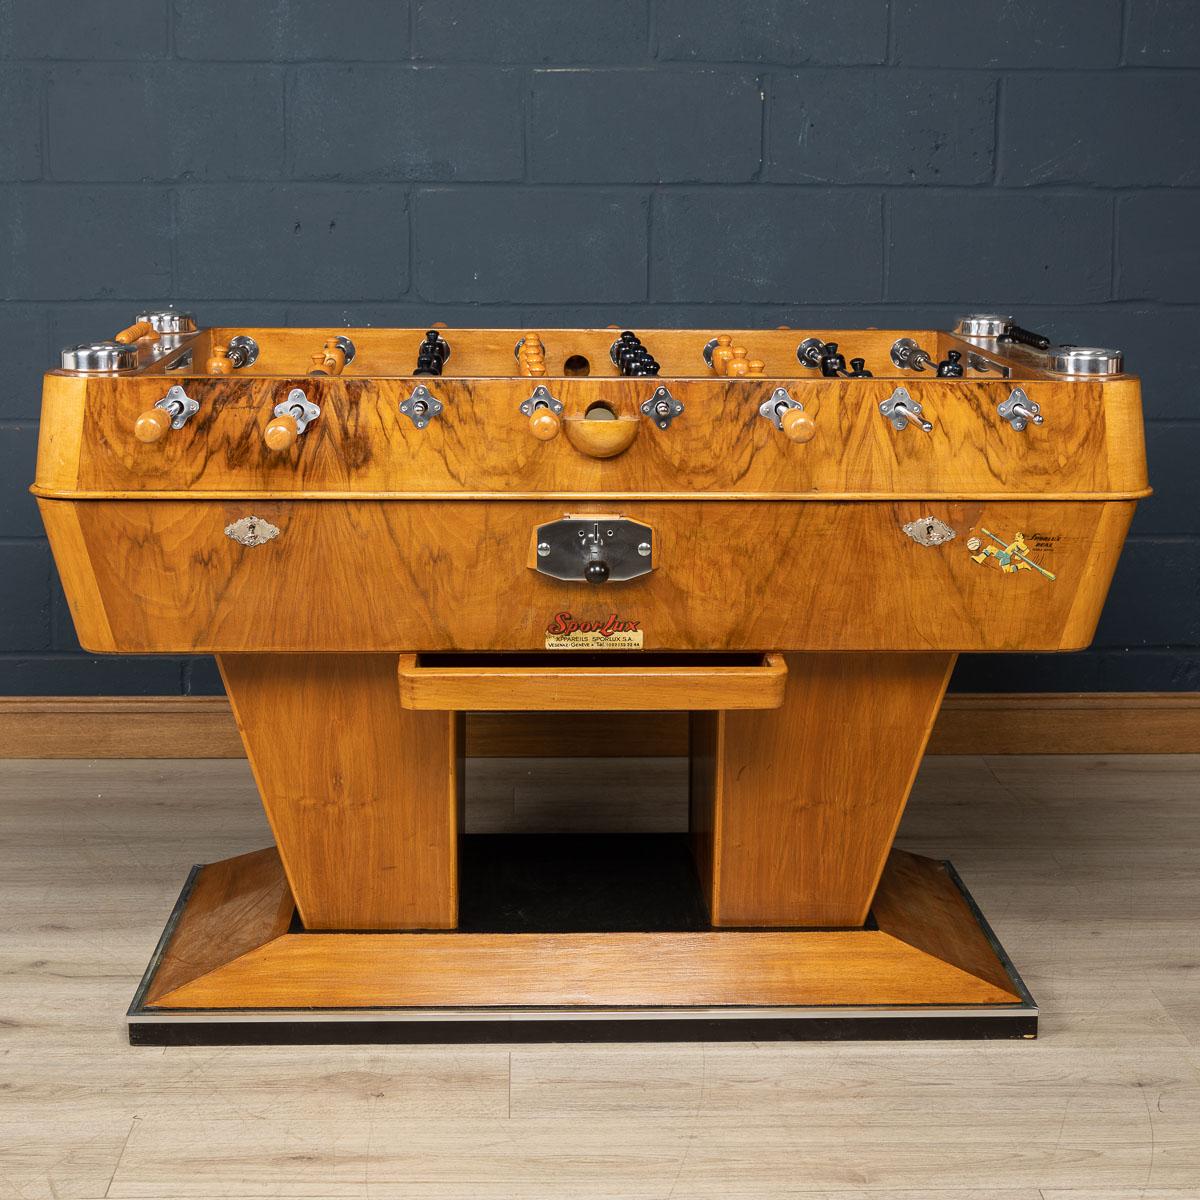 Ein wirklich auffälliger Tischfußballtisch, der um die Mitte des 20. Jahrhunderts in der Schweiz hergestellt wurde.

CONDIT
In tollem Vintage-Zustand - liebevoll restauriert. Spielt gut.

GRÖSSE
Höhe: 95 cm
Breite: 144cm
Tiefe (nur Tisch):